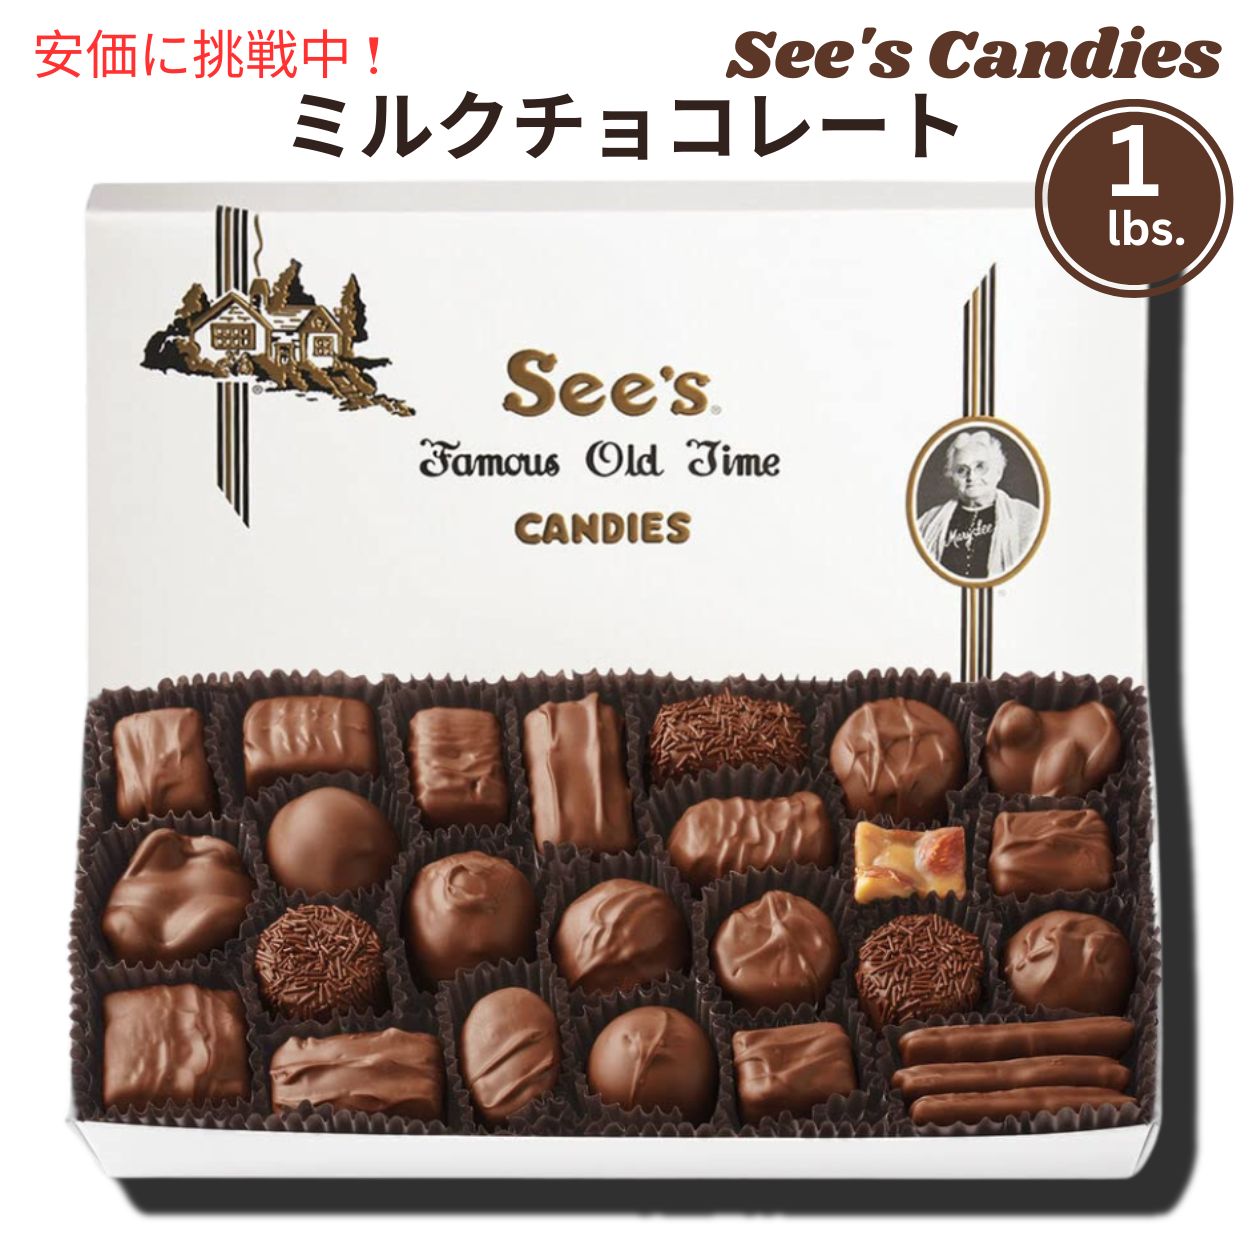 【 See 039 s Candies 】シーズキャンディ Milk Chocolates ミルク チョコレート チョコレート 詰め合わせ 1 lb/454g 326